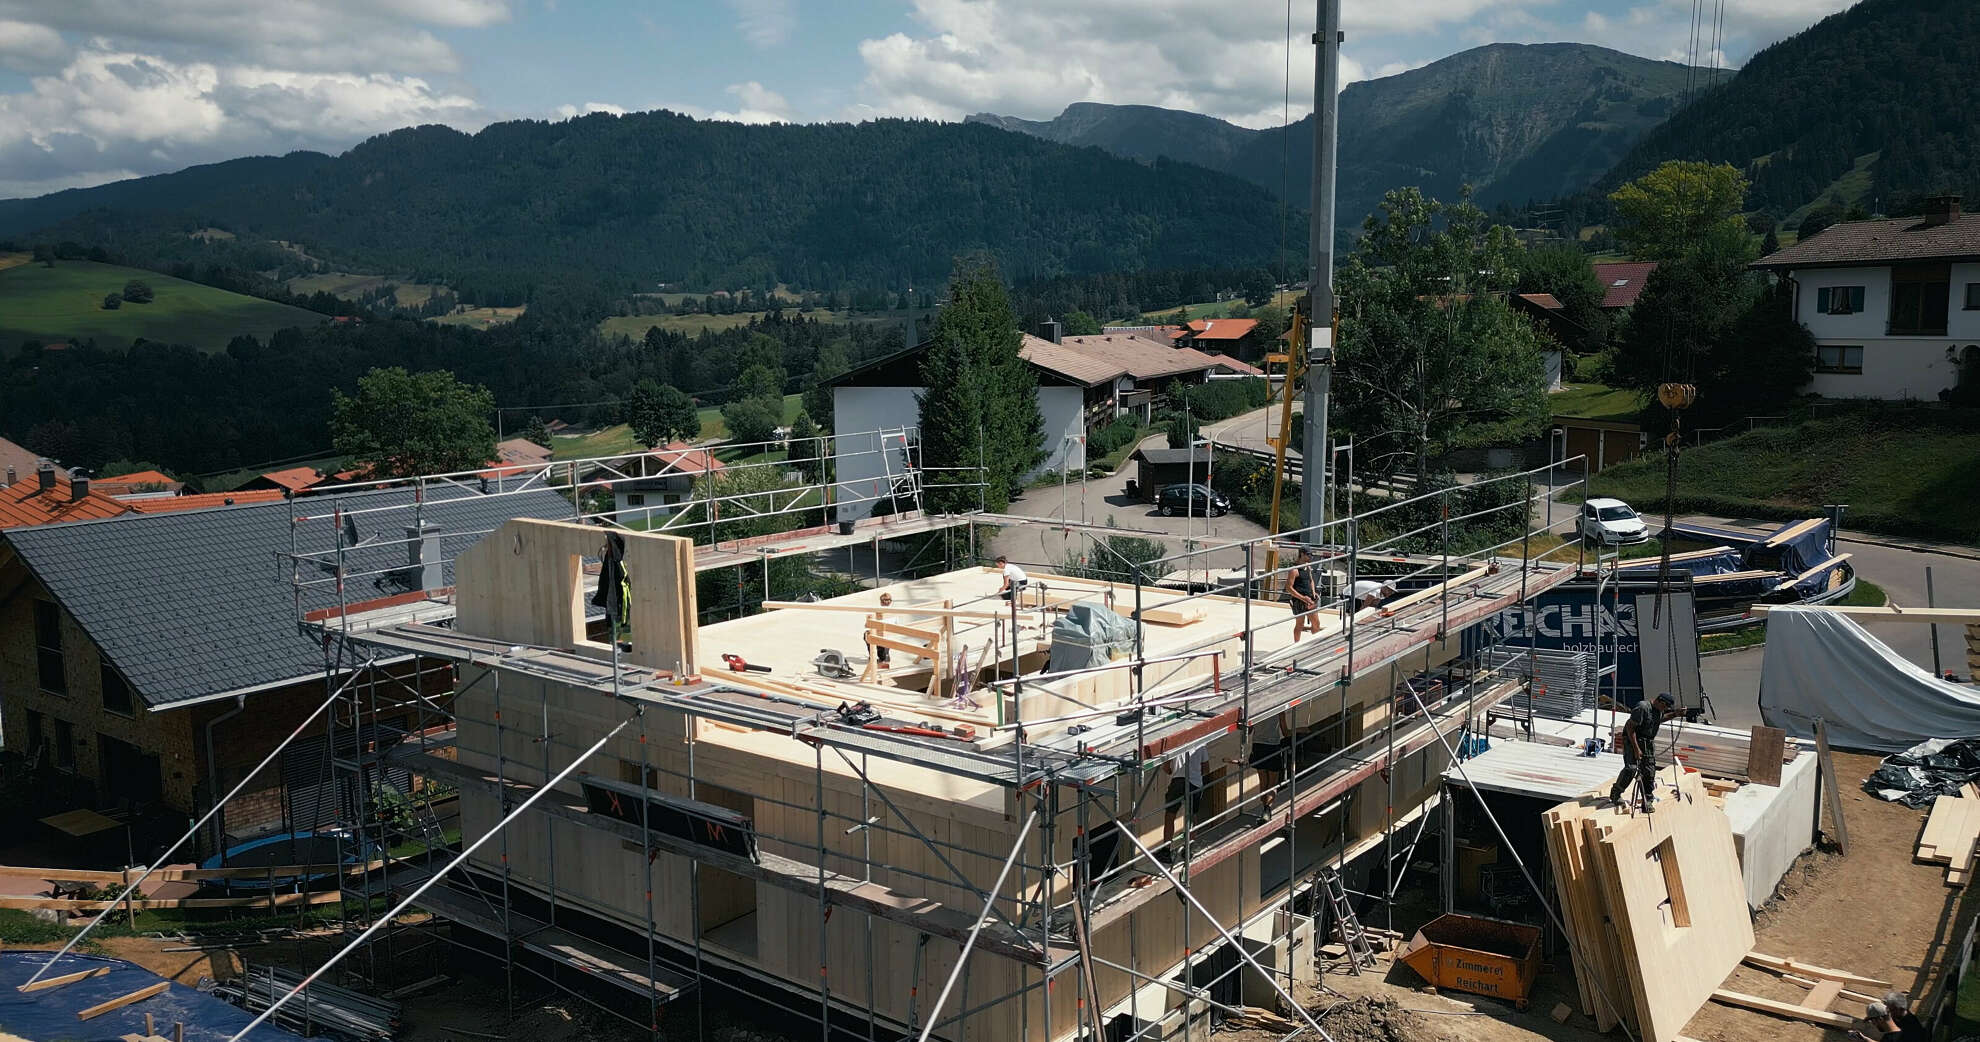 Bau eines Holzhaues in Steibis bei Oberstaufen